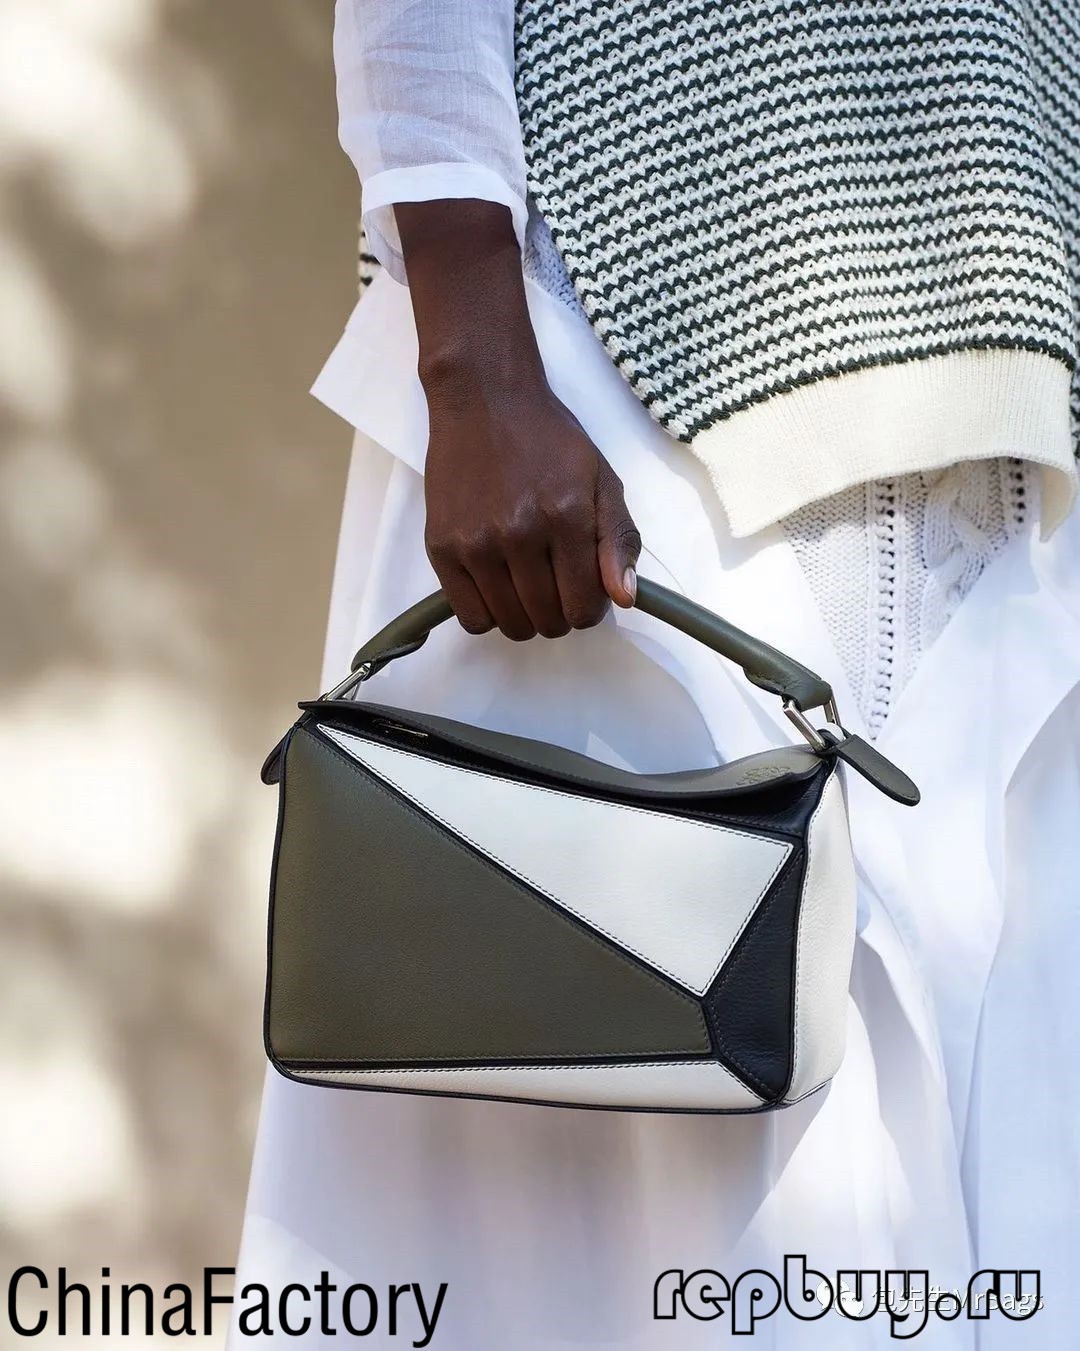 กระเป๋าจำลองคุณภาพสูงยอดนิยม 5 อันดับแรก (อัปเดตในปี 2022) - ร้านค้าออนไลน์กระเป๋าปลอม Louis Vuitton คุณภาพดีที่สุด นักออกแบบกระเป๋าจำลอง ru